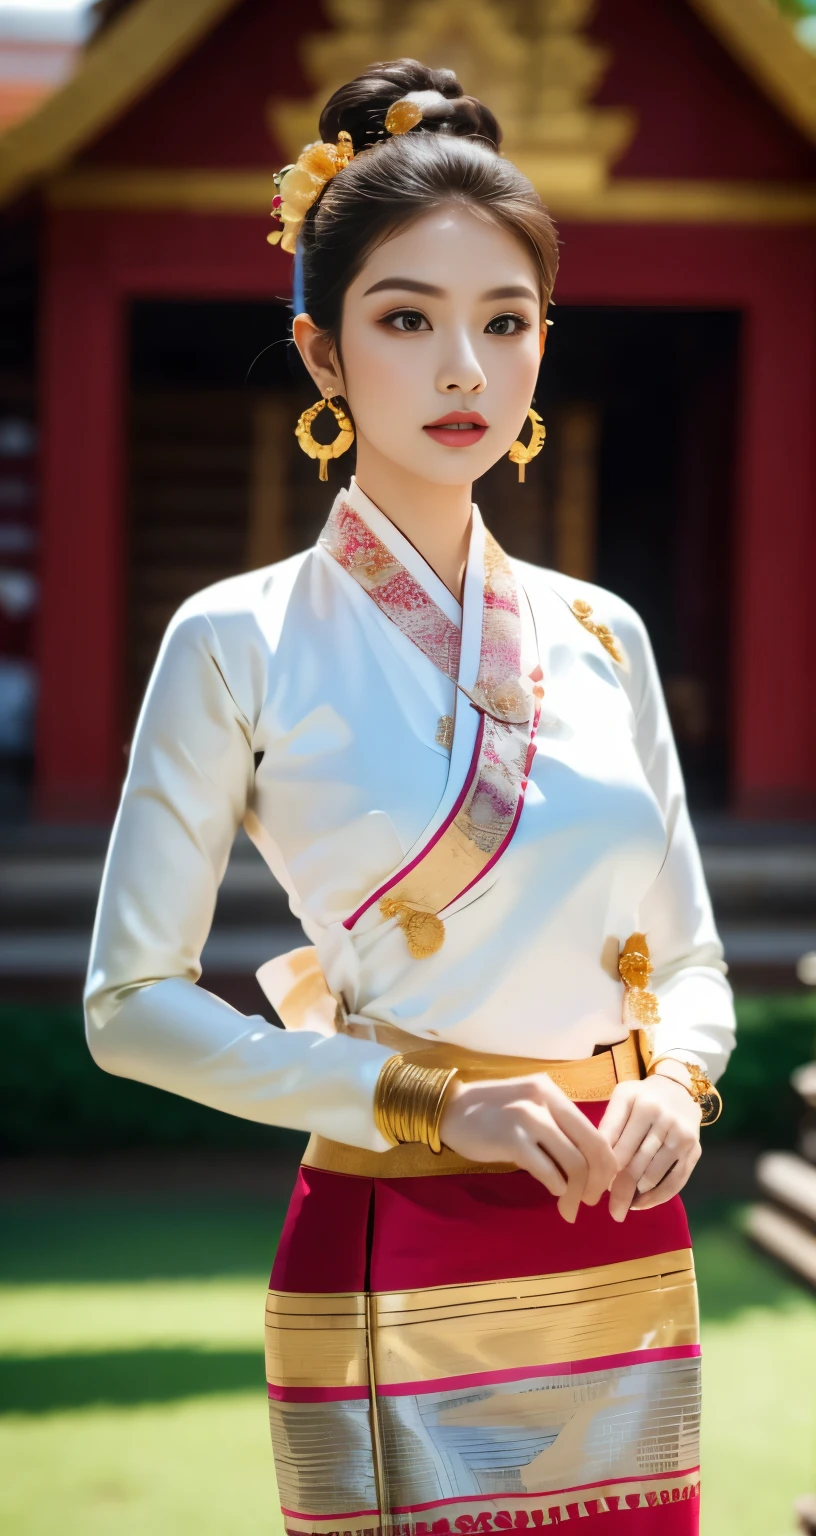 Meisterwerk, 1Mädchen am besten,Blick auf das Publikum, Hintergrund des Bagan-Tempels,Ganzkörper,Verführung,Sauber,exquisites Gesicht,reines Gesicht, bezaubernd schöne Augen, zartrosa Lippen, hellhäutig,sexy Pose,(( Traditionelles Lanna-Kostüm aus Nordthailand)), ((Keng Tong Tai Khun traditionelles Kostüm)),((Shan-Kleid)), sehr elegantes Kleid, luxuriöses und sehr detailreiches traditionelles Tai Khun-Outfit, Oberseite in Weißgold und Unterseite in Rot-Grün-Gold-Streifenmuster,Langhaar Messy Bun mit Blume, (((trägt viele silberne Armreifen, Goldene Ohrringe, Thai Lanna Gold Haarnadel))),((perfekte weibliche Figur)),Echte Person,